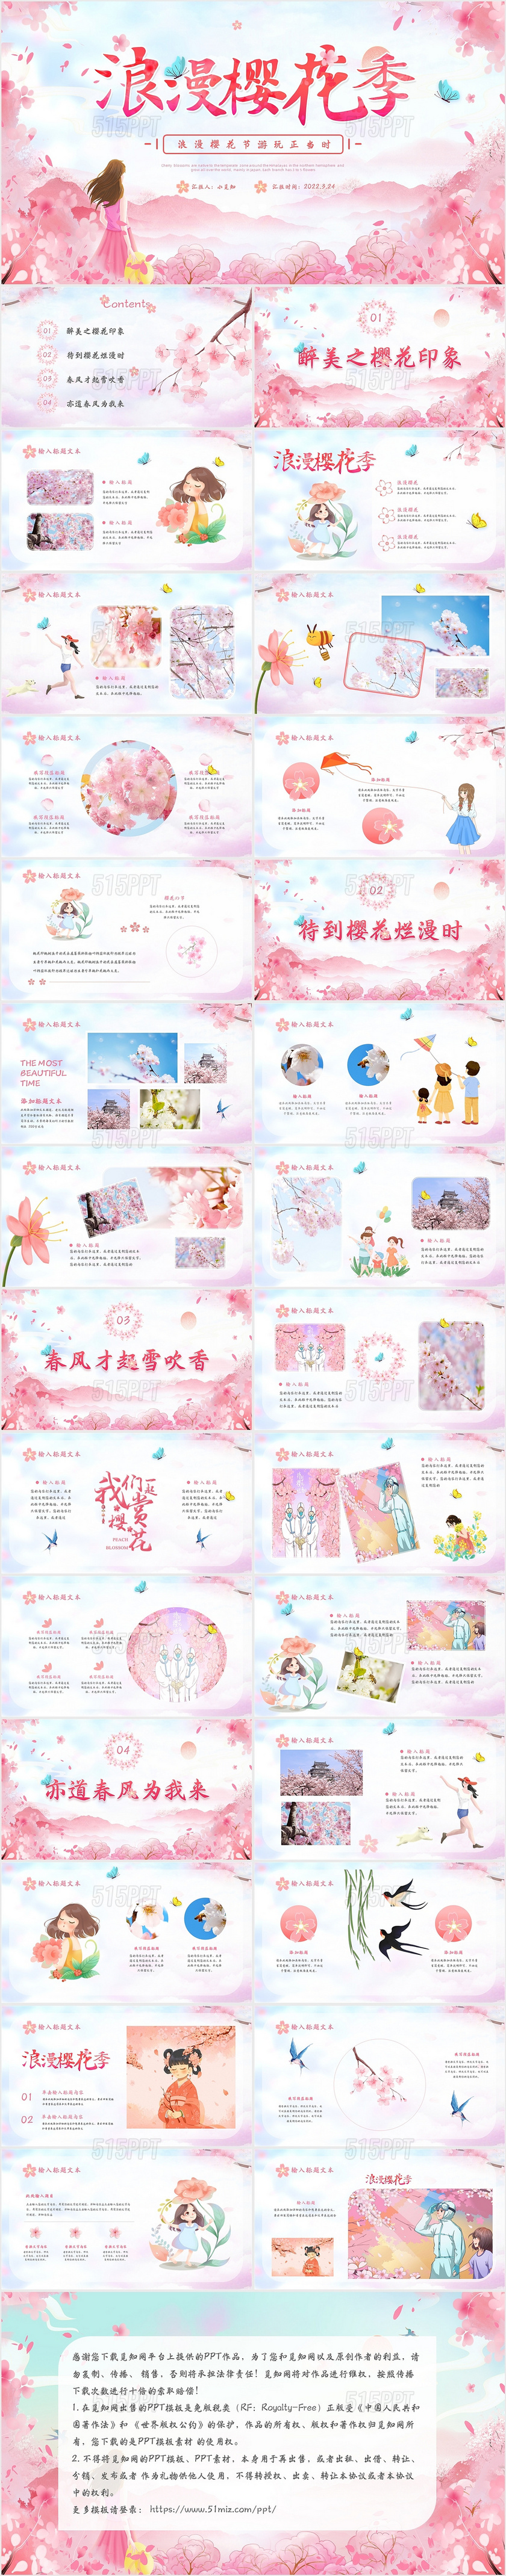 粉色卡通浪漫樱花季樱花旅游PPT模板